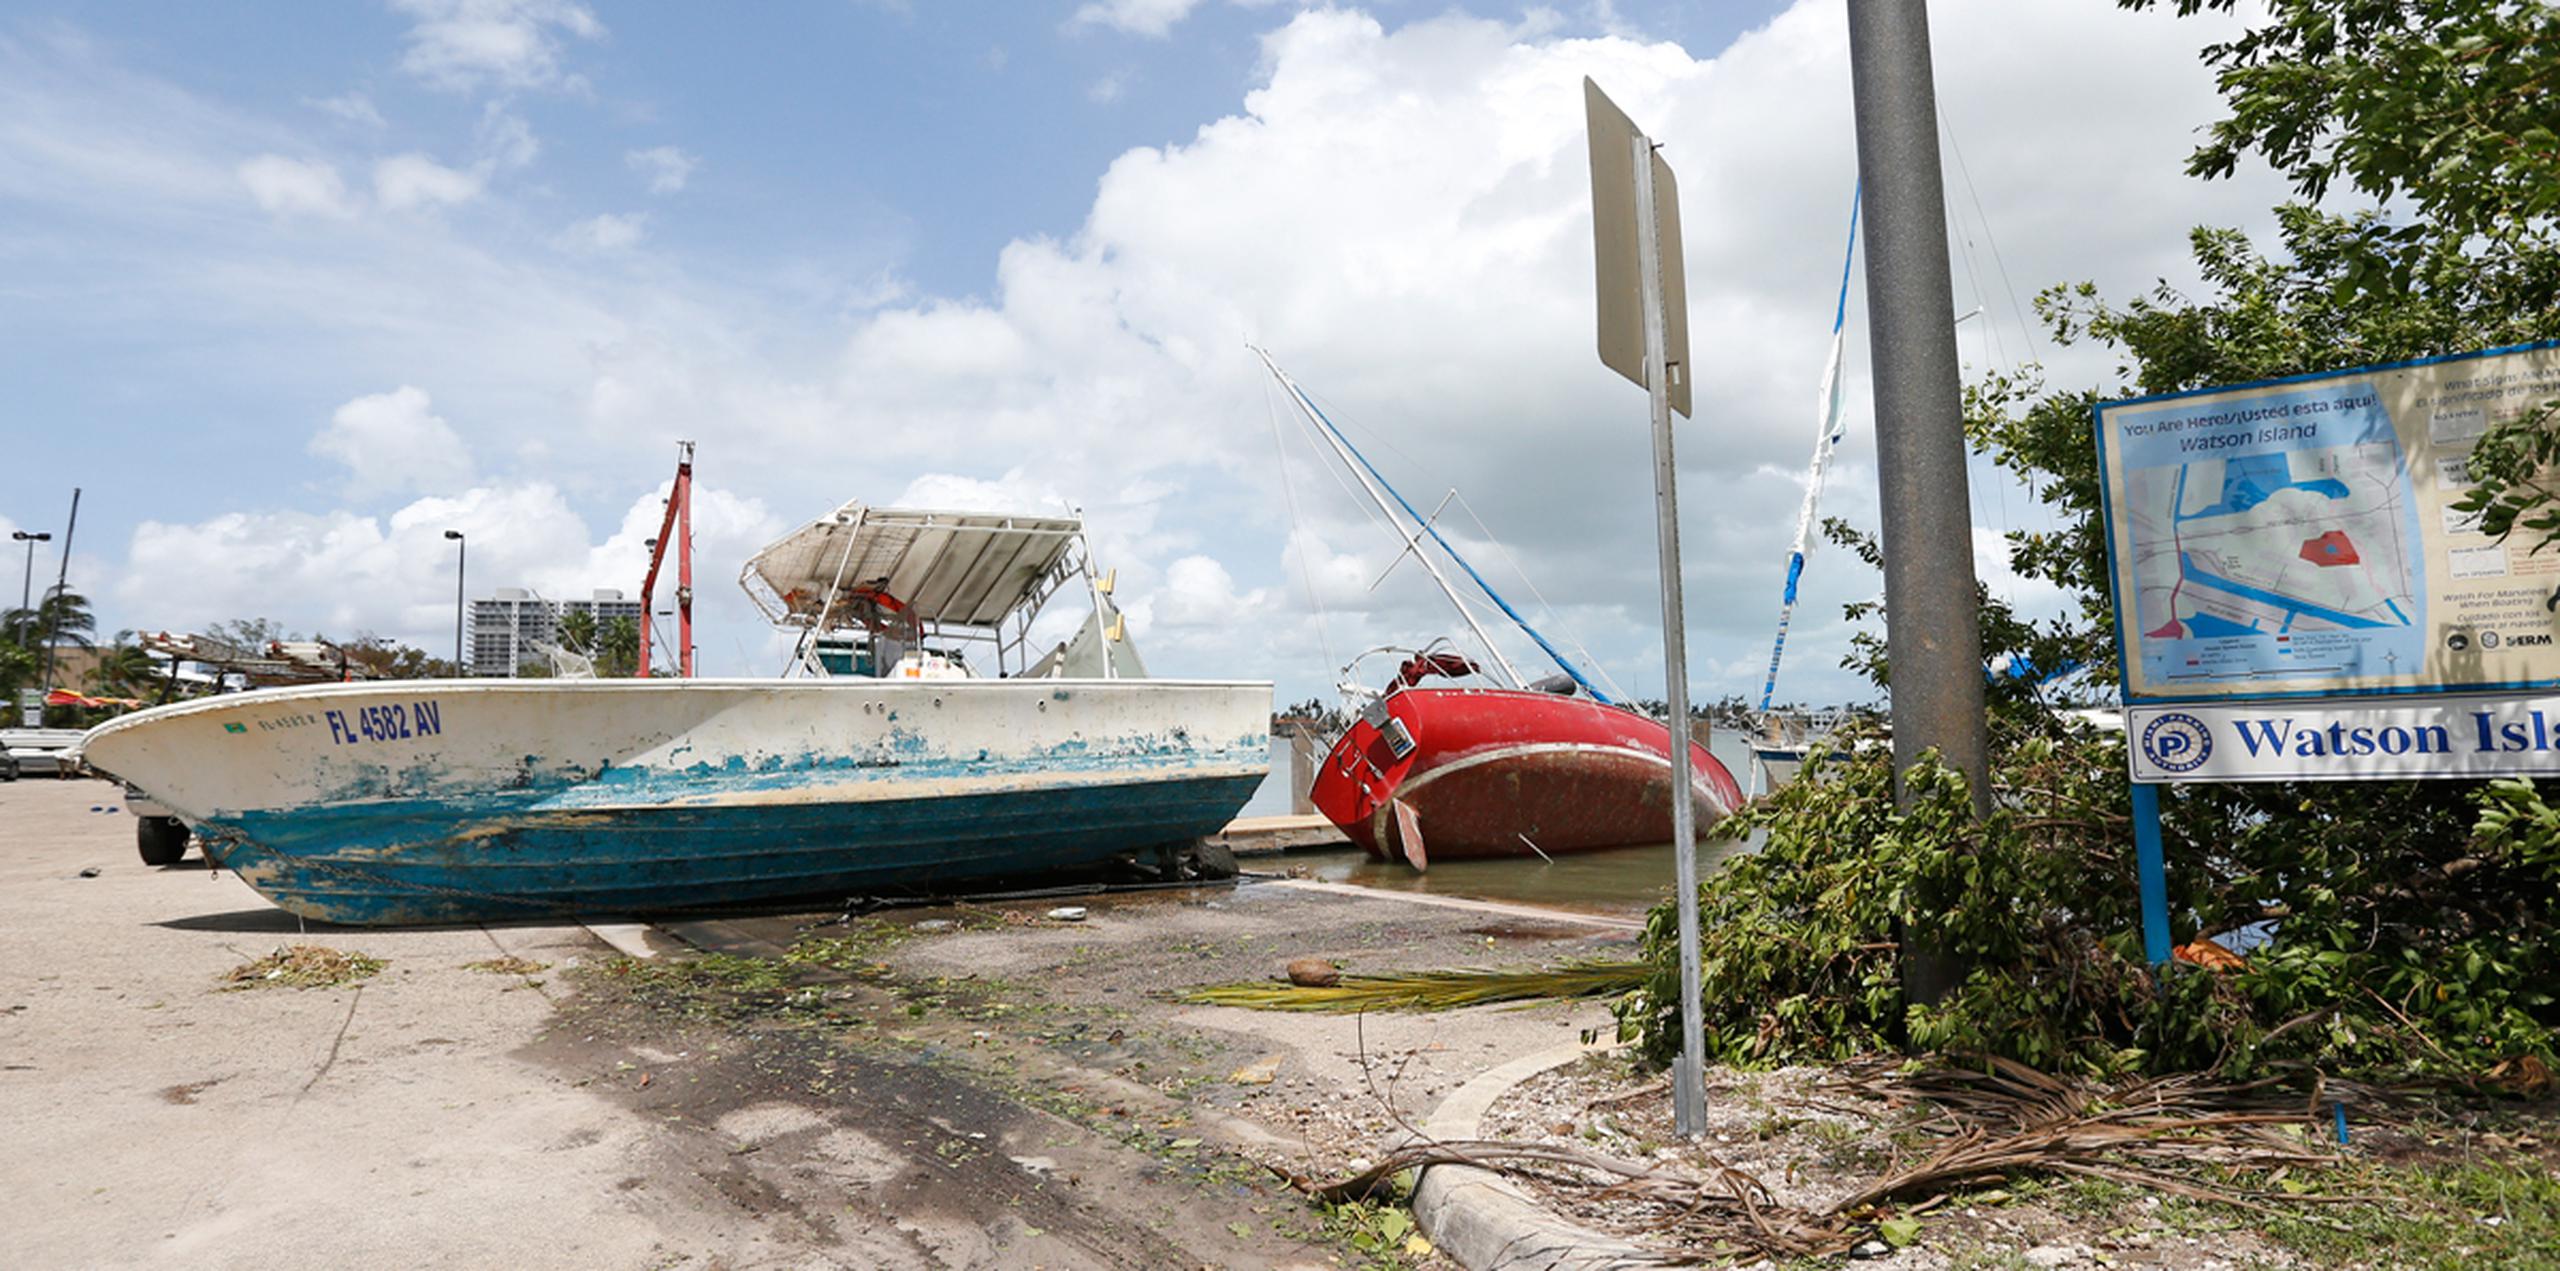 Vista de las embarcaciones varadas en la isla de Watson tras el paso del huracán Irma. (AP)